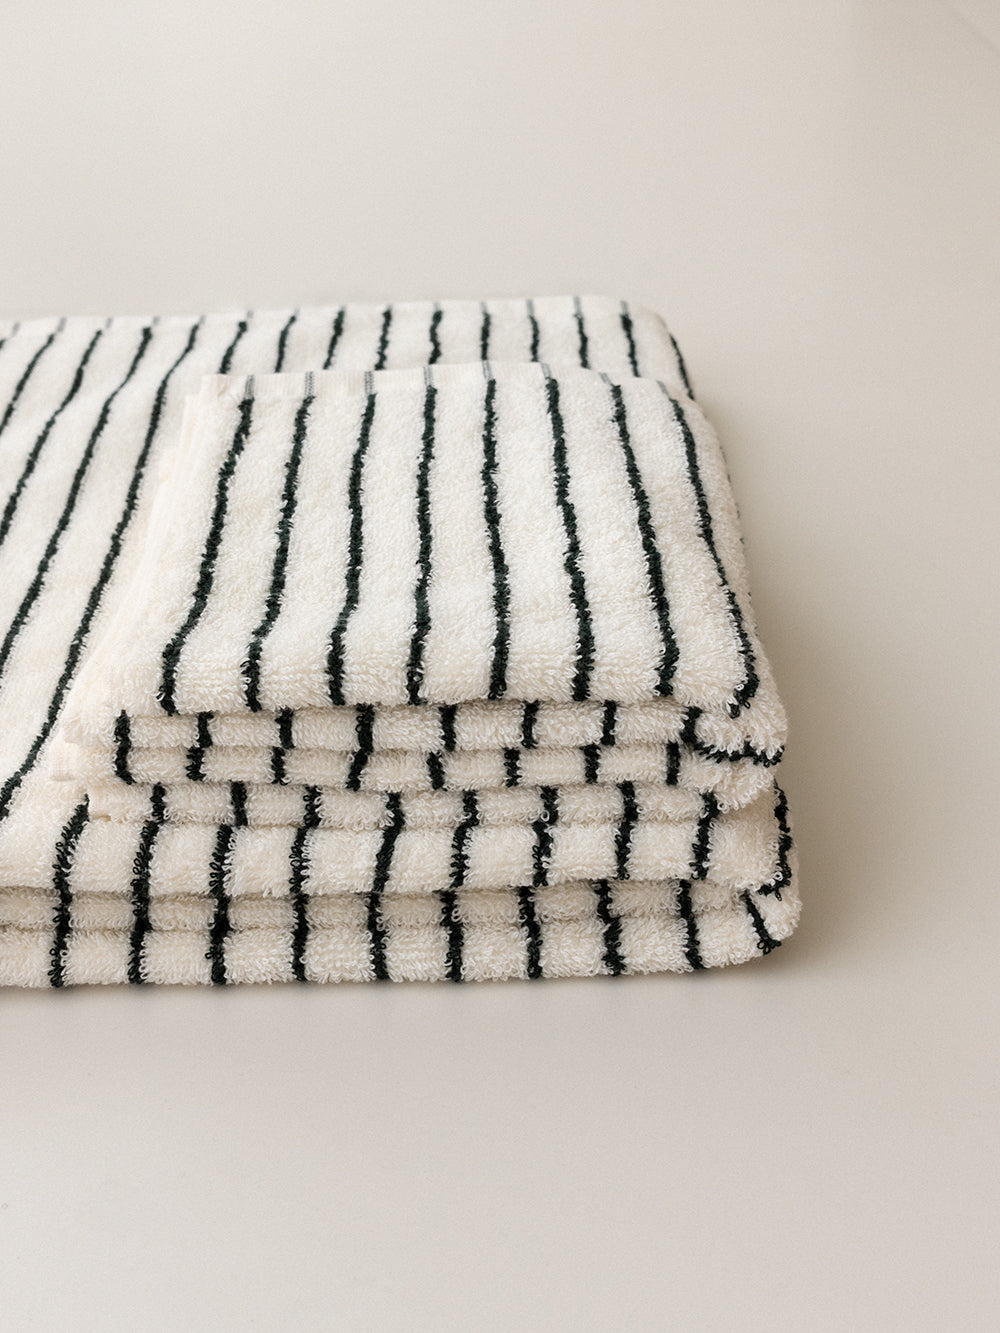 Black&white striped pure cotton bath towel